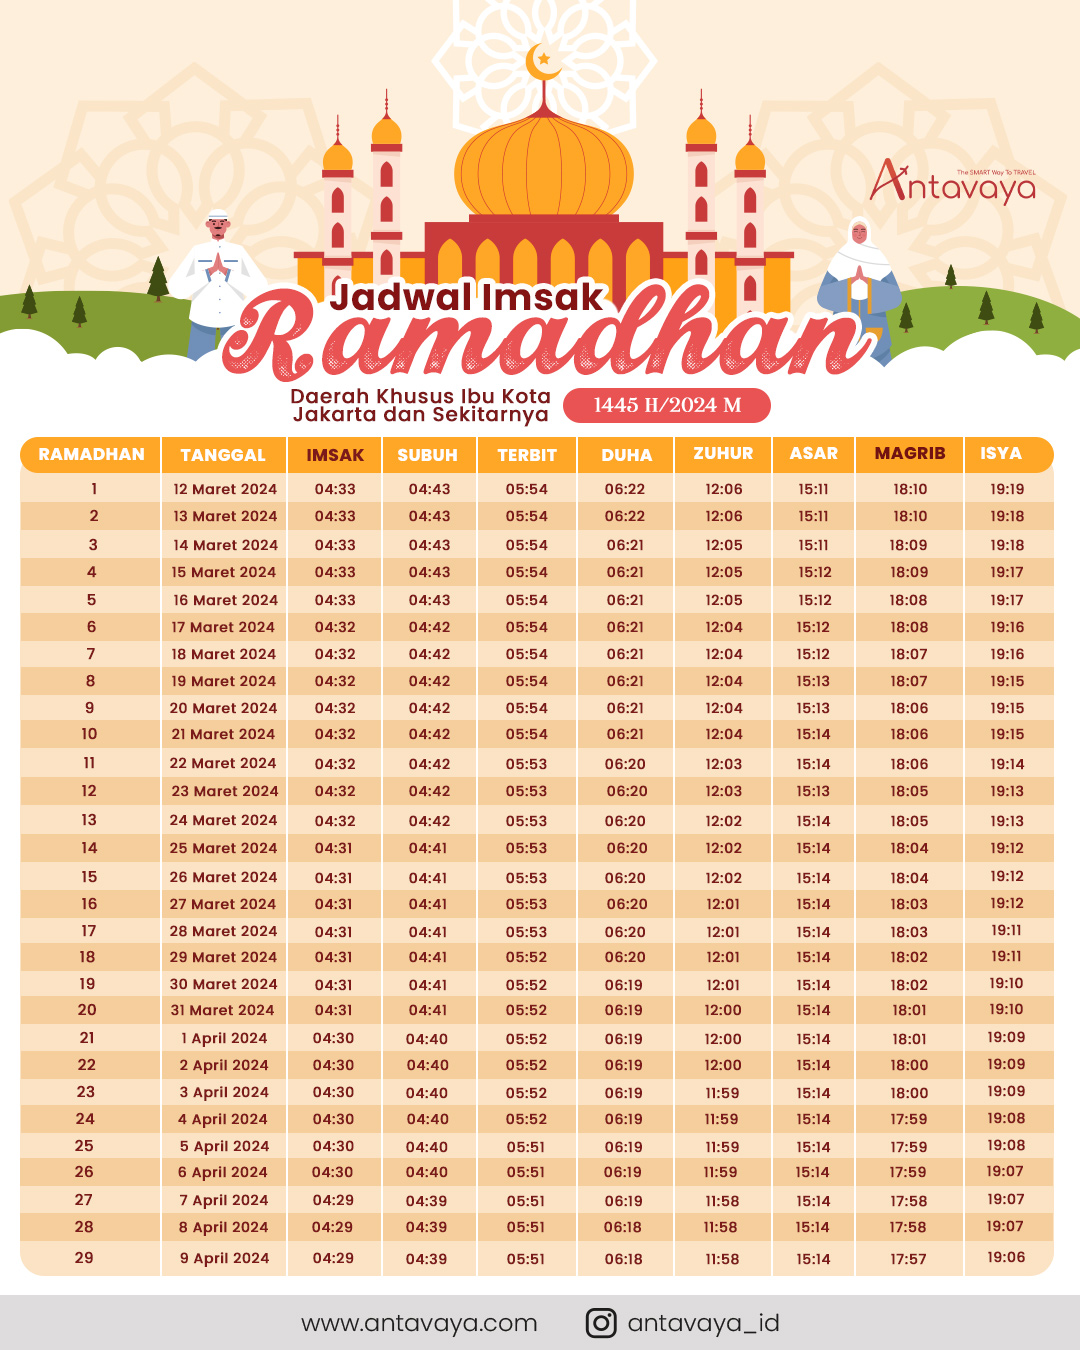 Jadwal Imsak Ramadan 2024 untuk DKI Jakarta dan Sekitarnya